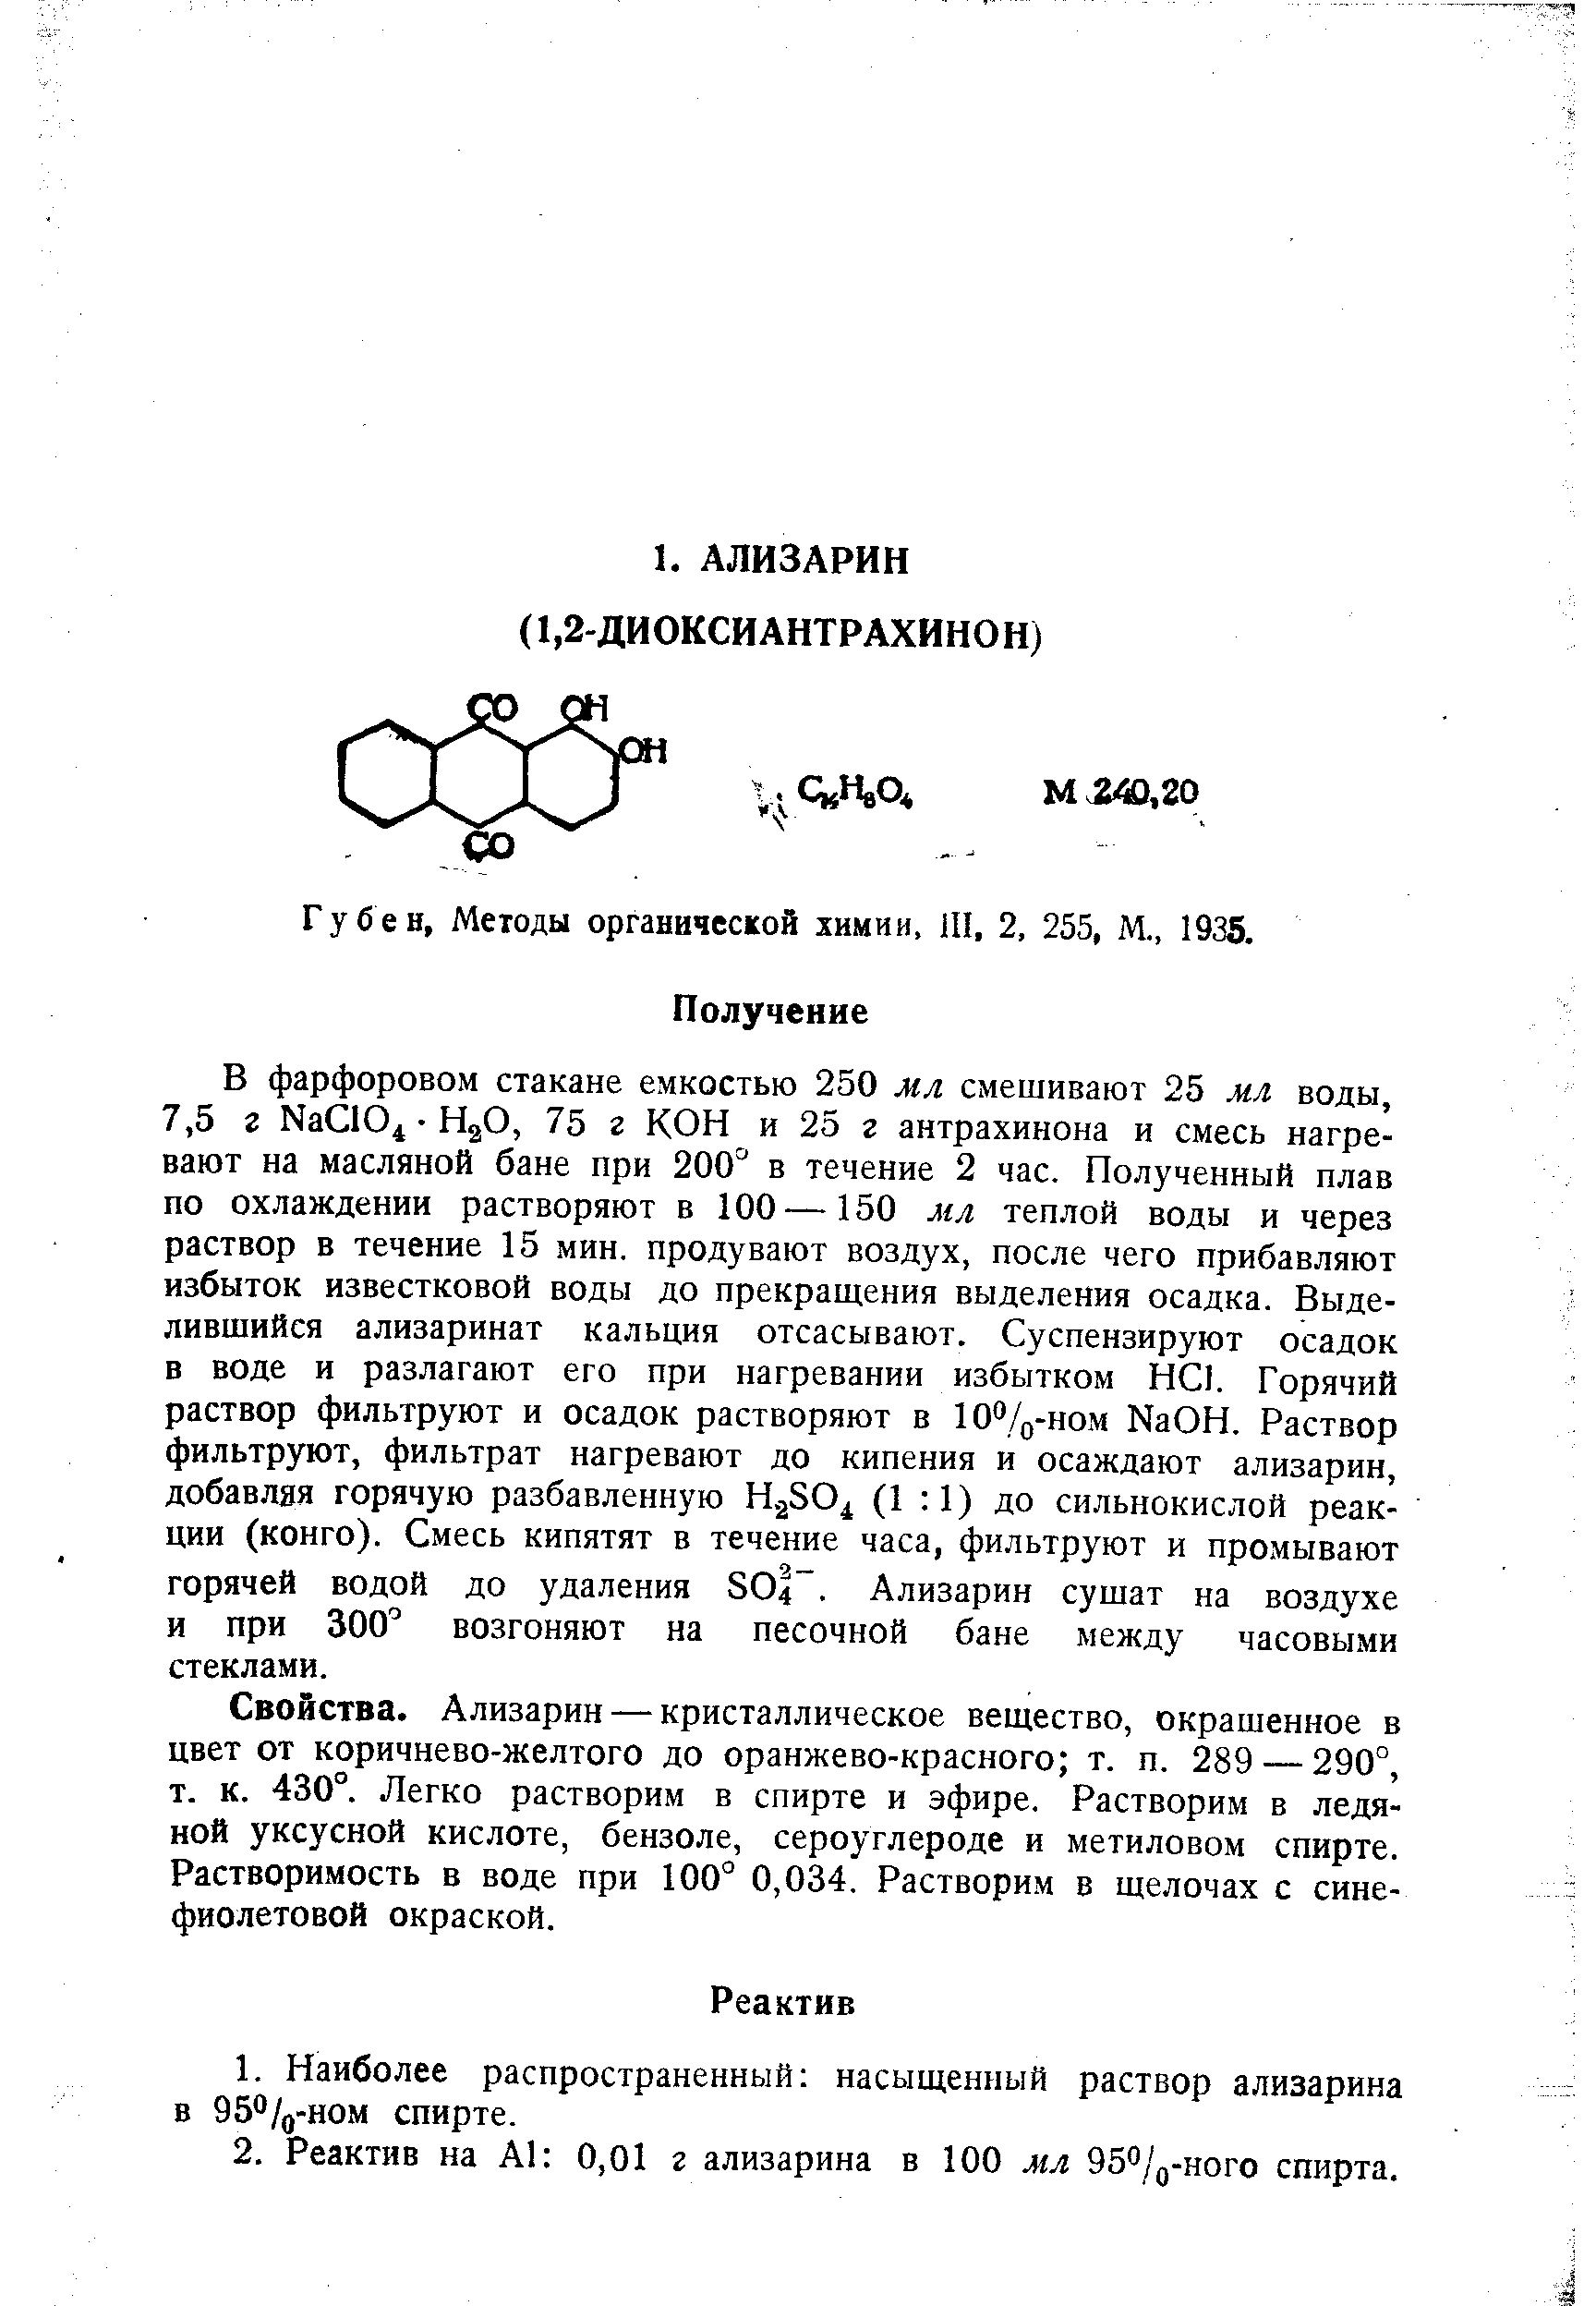 Методы органической химии, Ш, 2, 255, М., 1935.